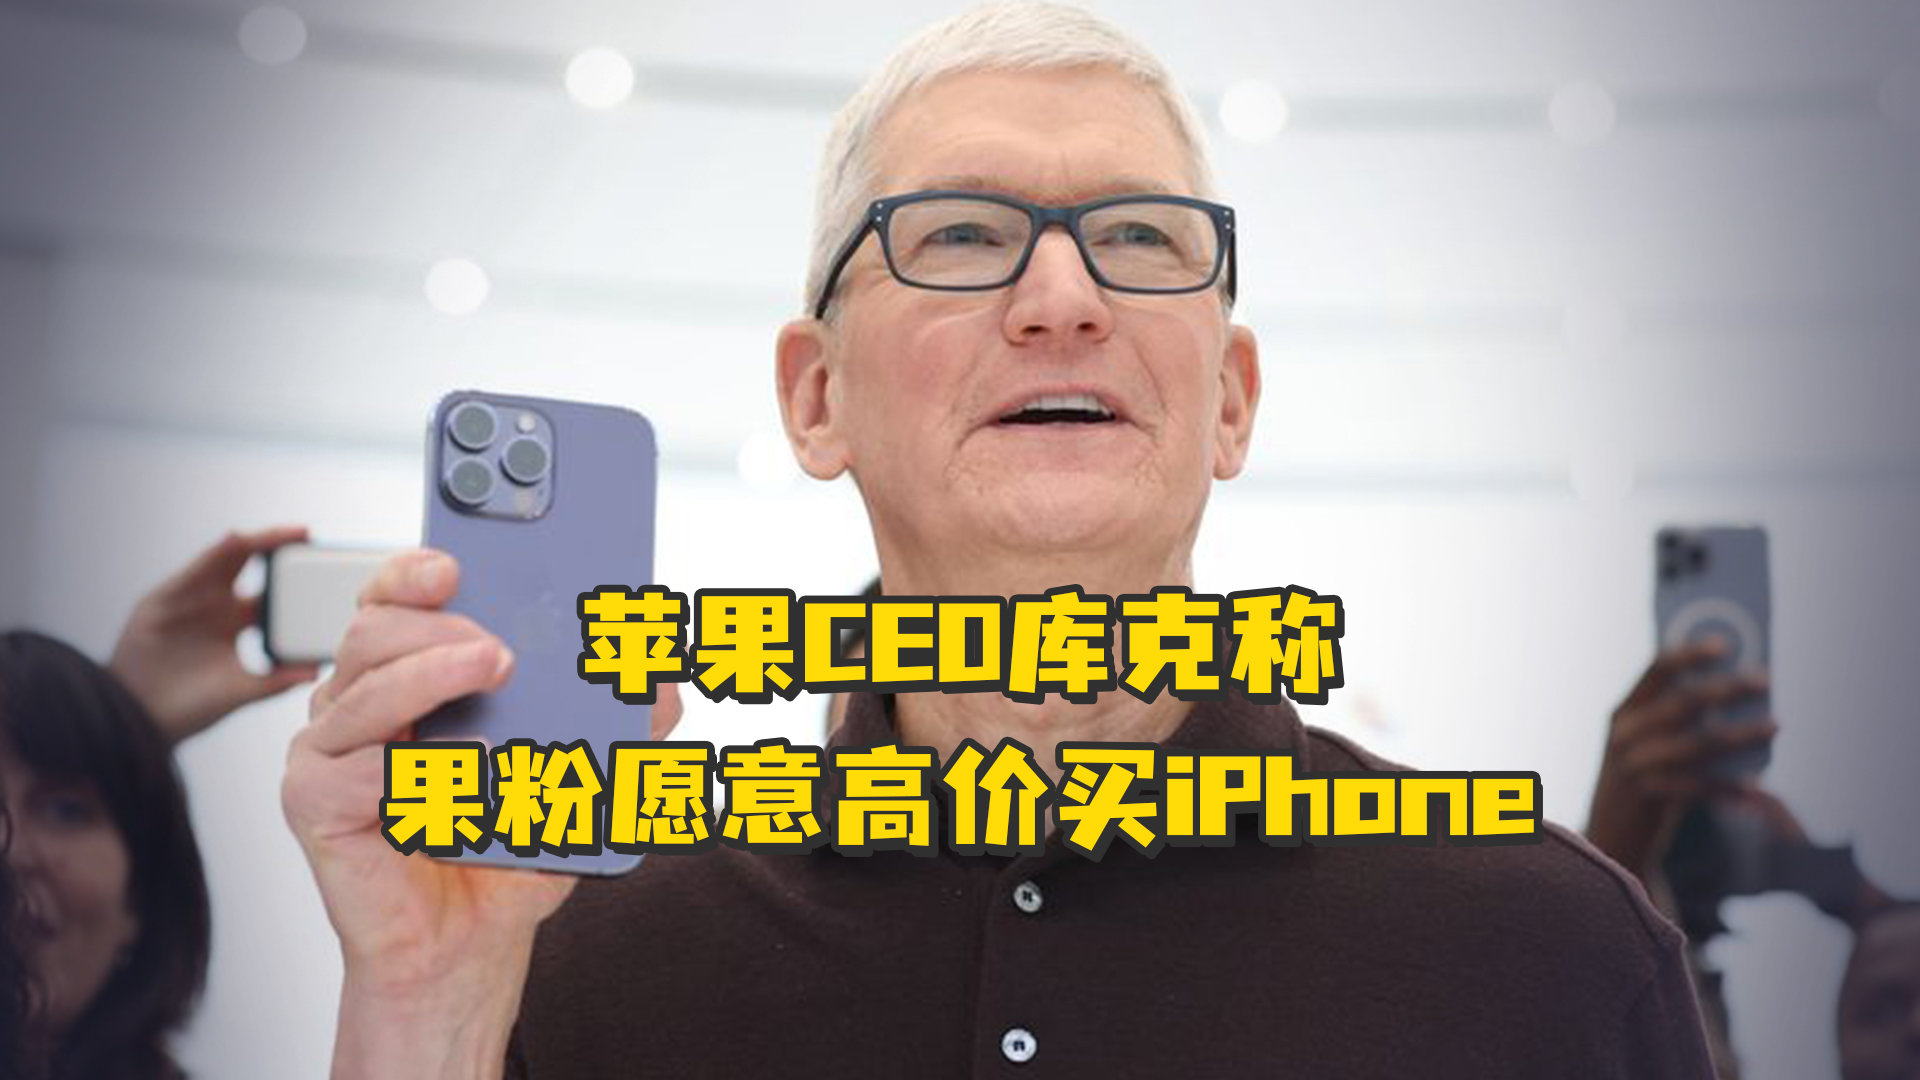 苹果CEO库克称 果粉愿意高价买iPhone